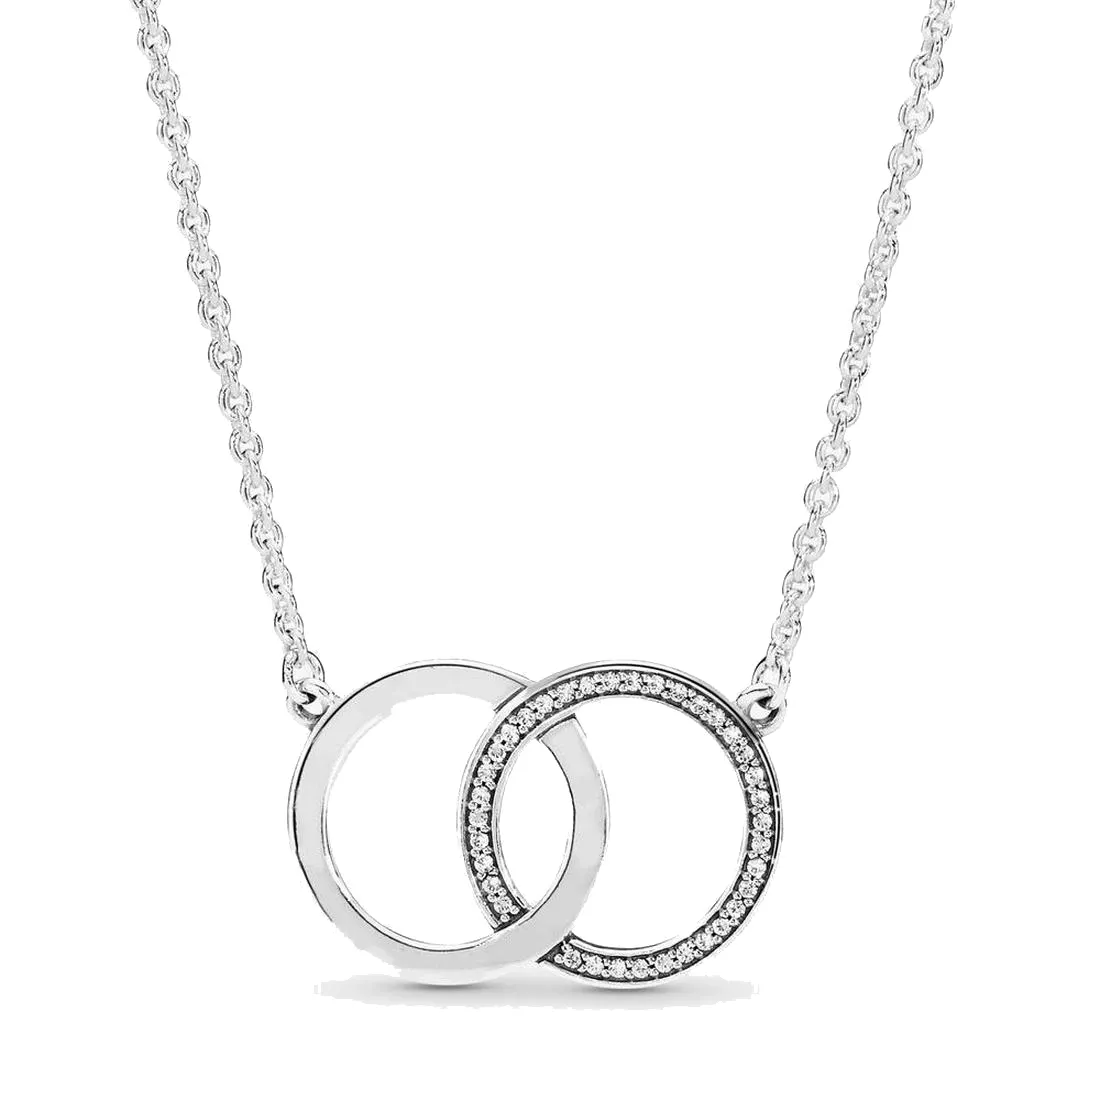 Kobiety biżuteria fit Pandora Ring naszyjnik ze srebra próby 925 LOGO splecione koła miłość biżuteria w kształcie serca naszyjniki urok prezent zaręczynowy